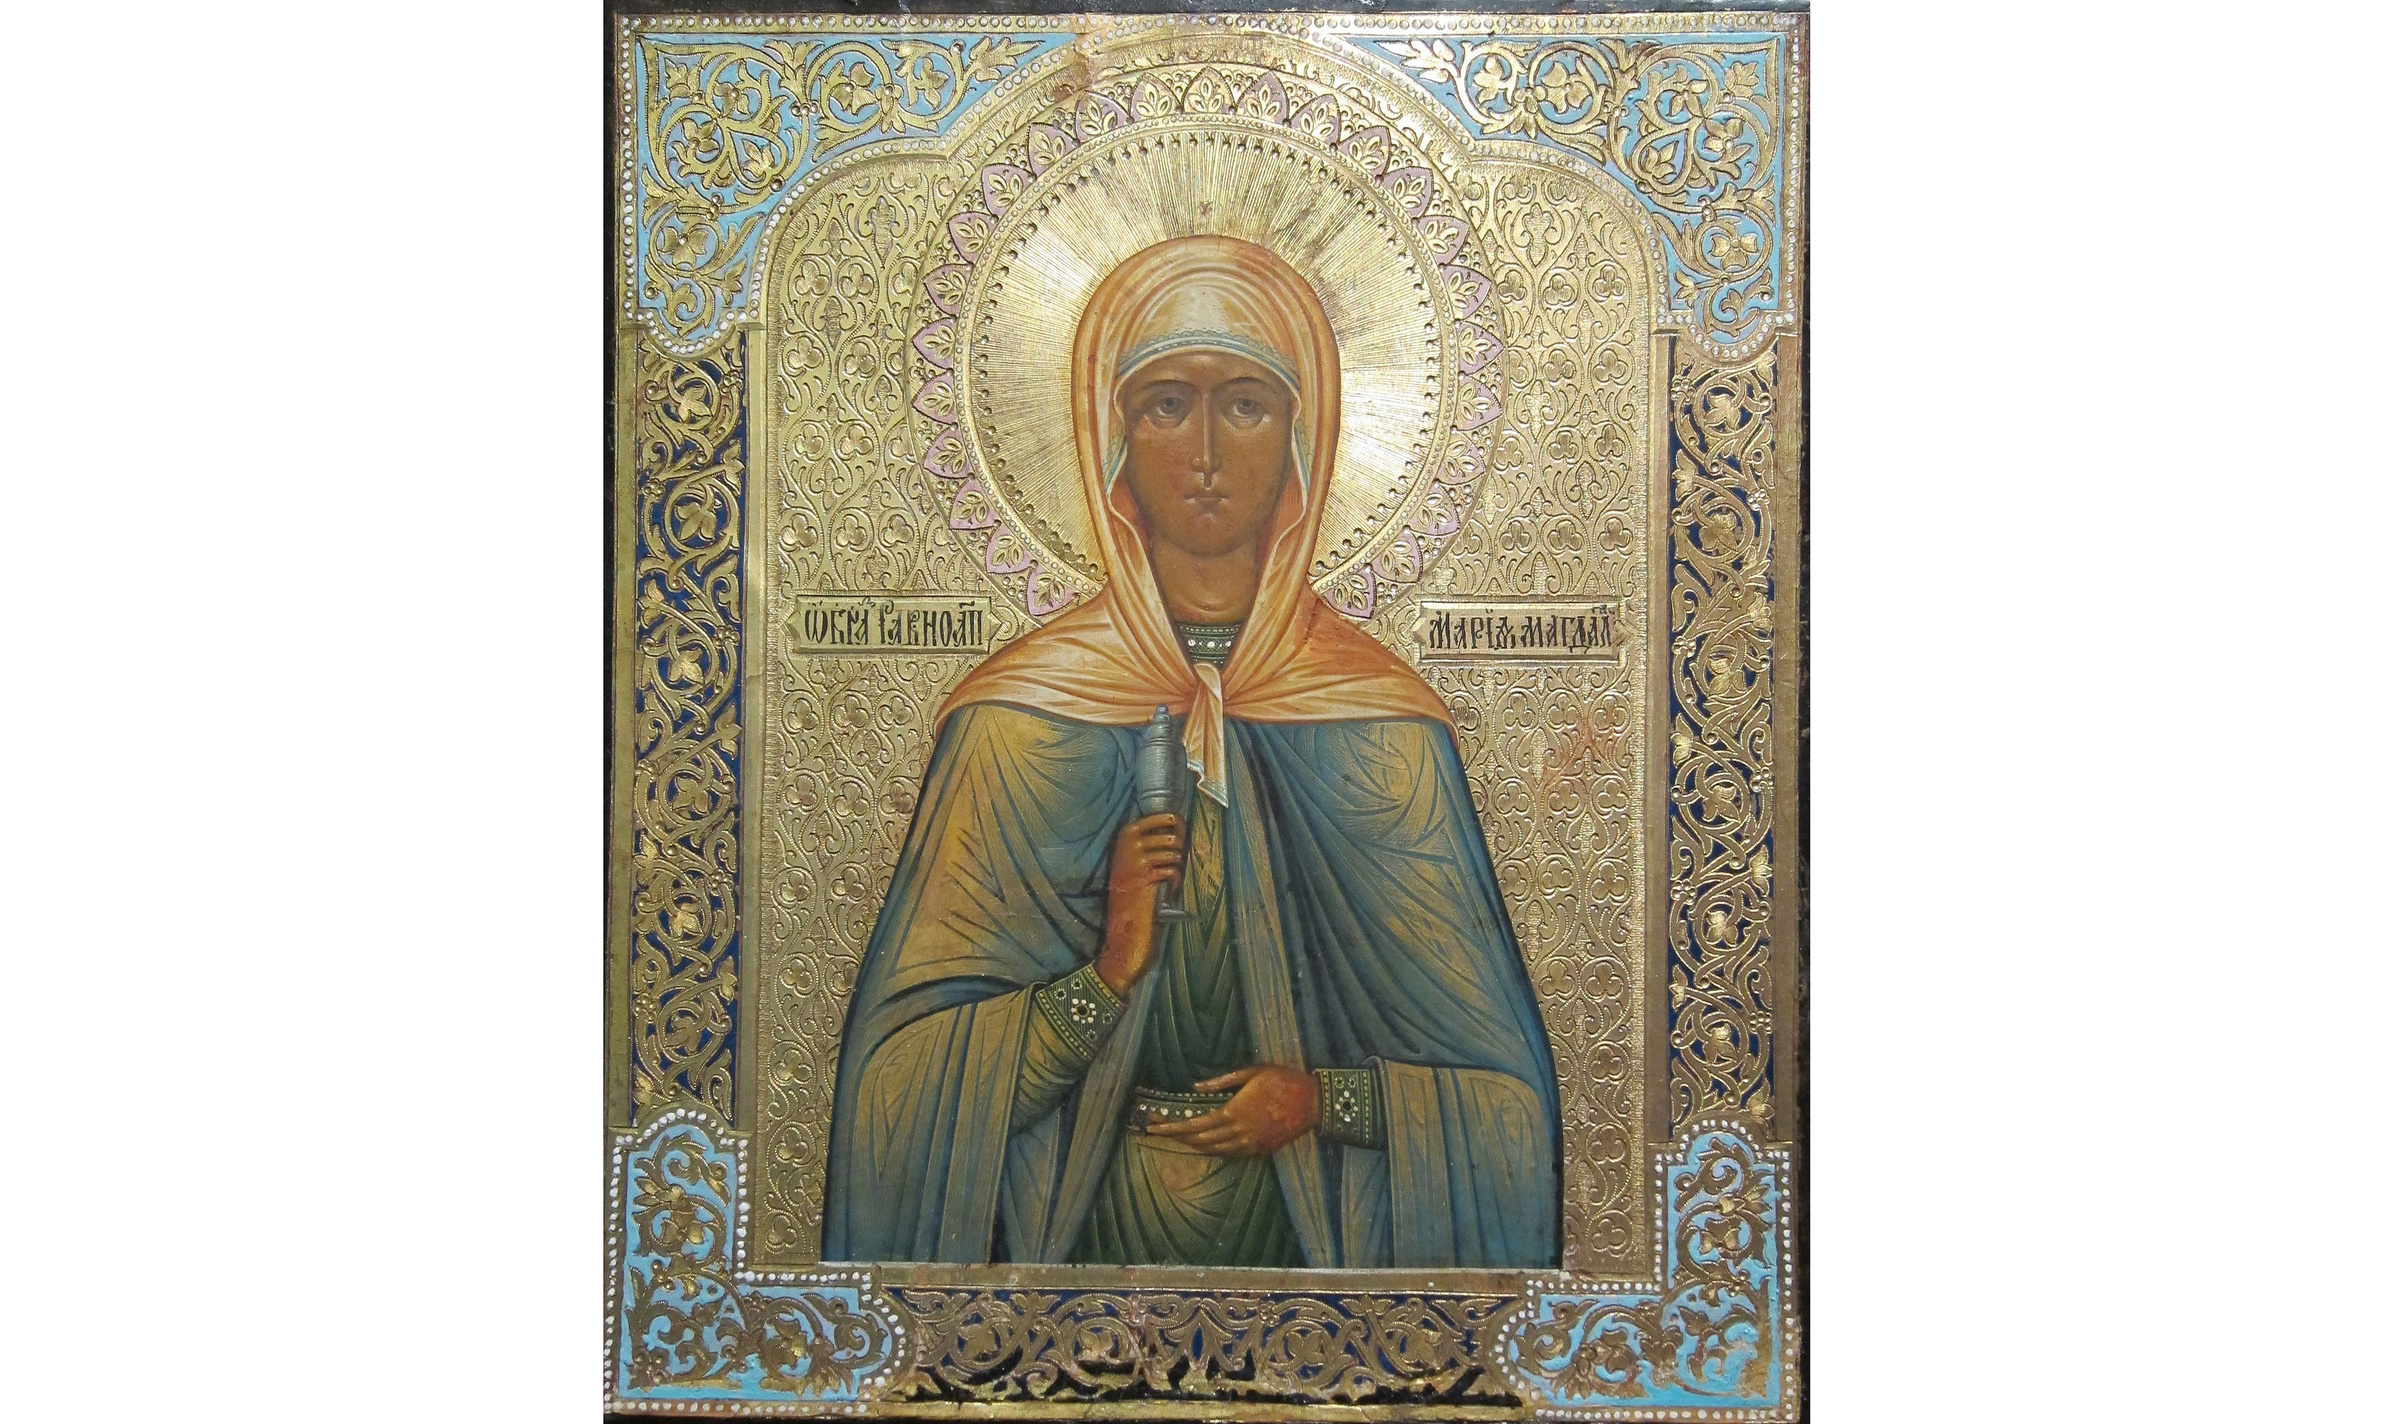 Как звали жён-мироносиц? Православная икона. Святая Мария Магдалина изображена держащей сосуд с миром в руках как жена-мироносица. Фото © Wikipedia